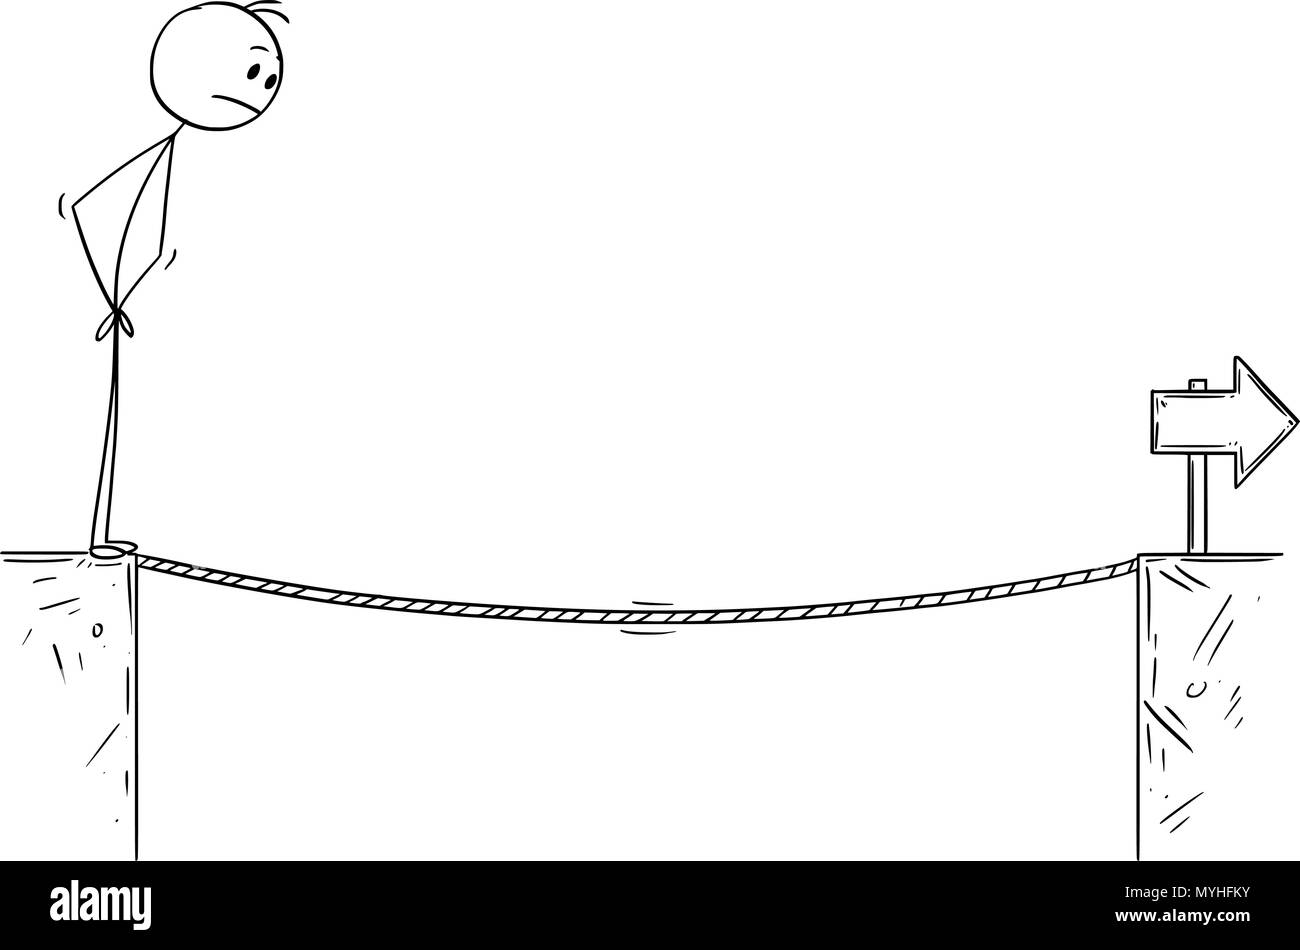 Caricatura del empresario enfrenta Desafío de cuerda floja sobre el abismo Ilustración del Vector